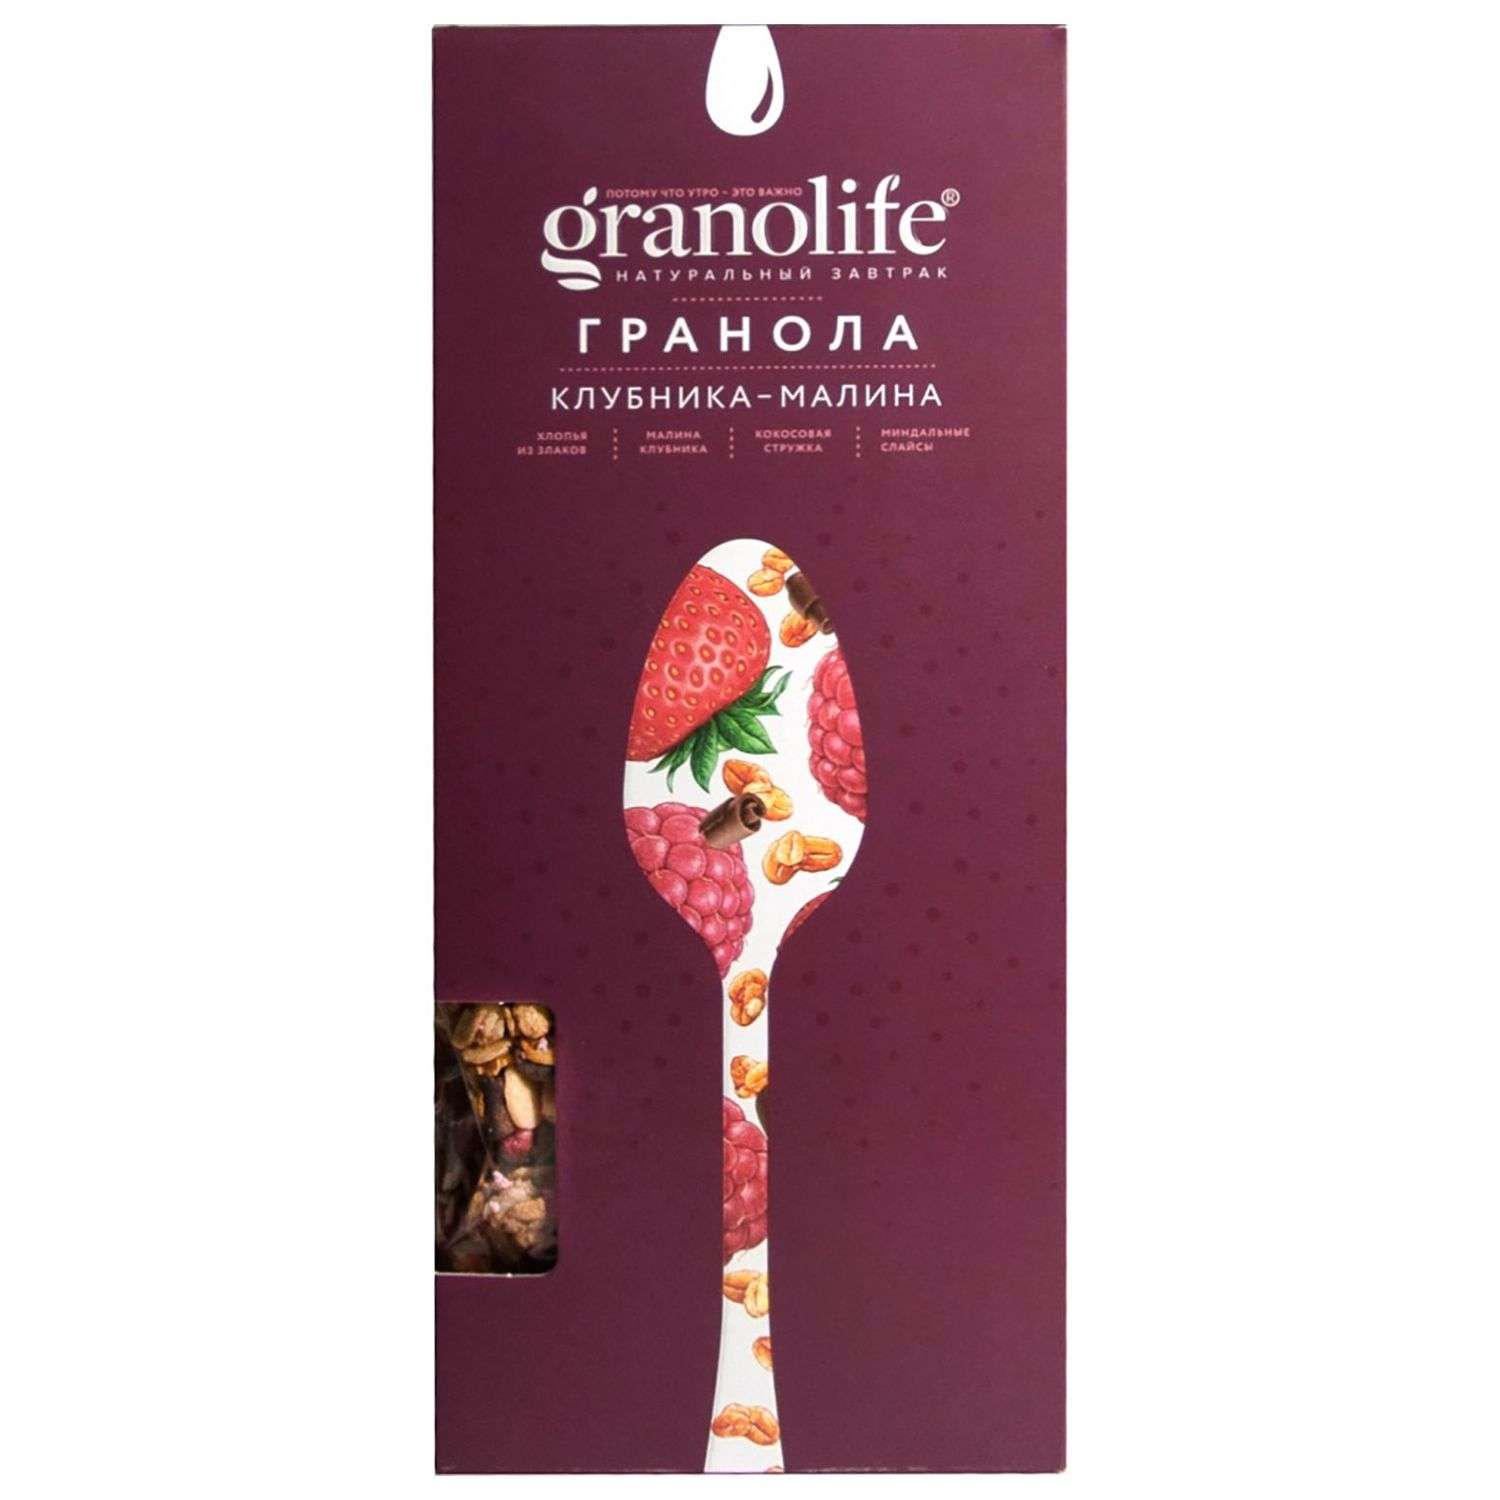 Гранола Granolife клубника-малина 200г - фото 2